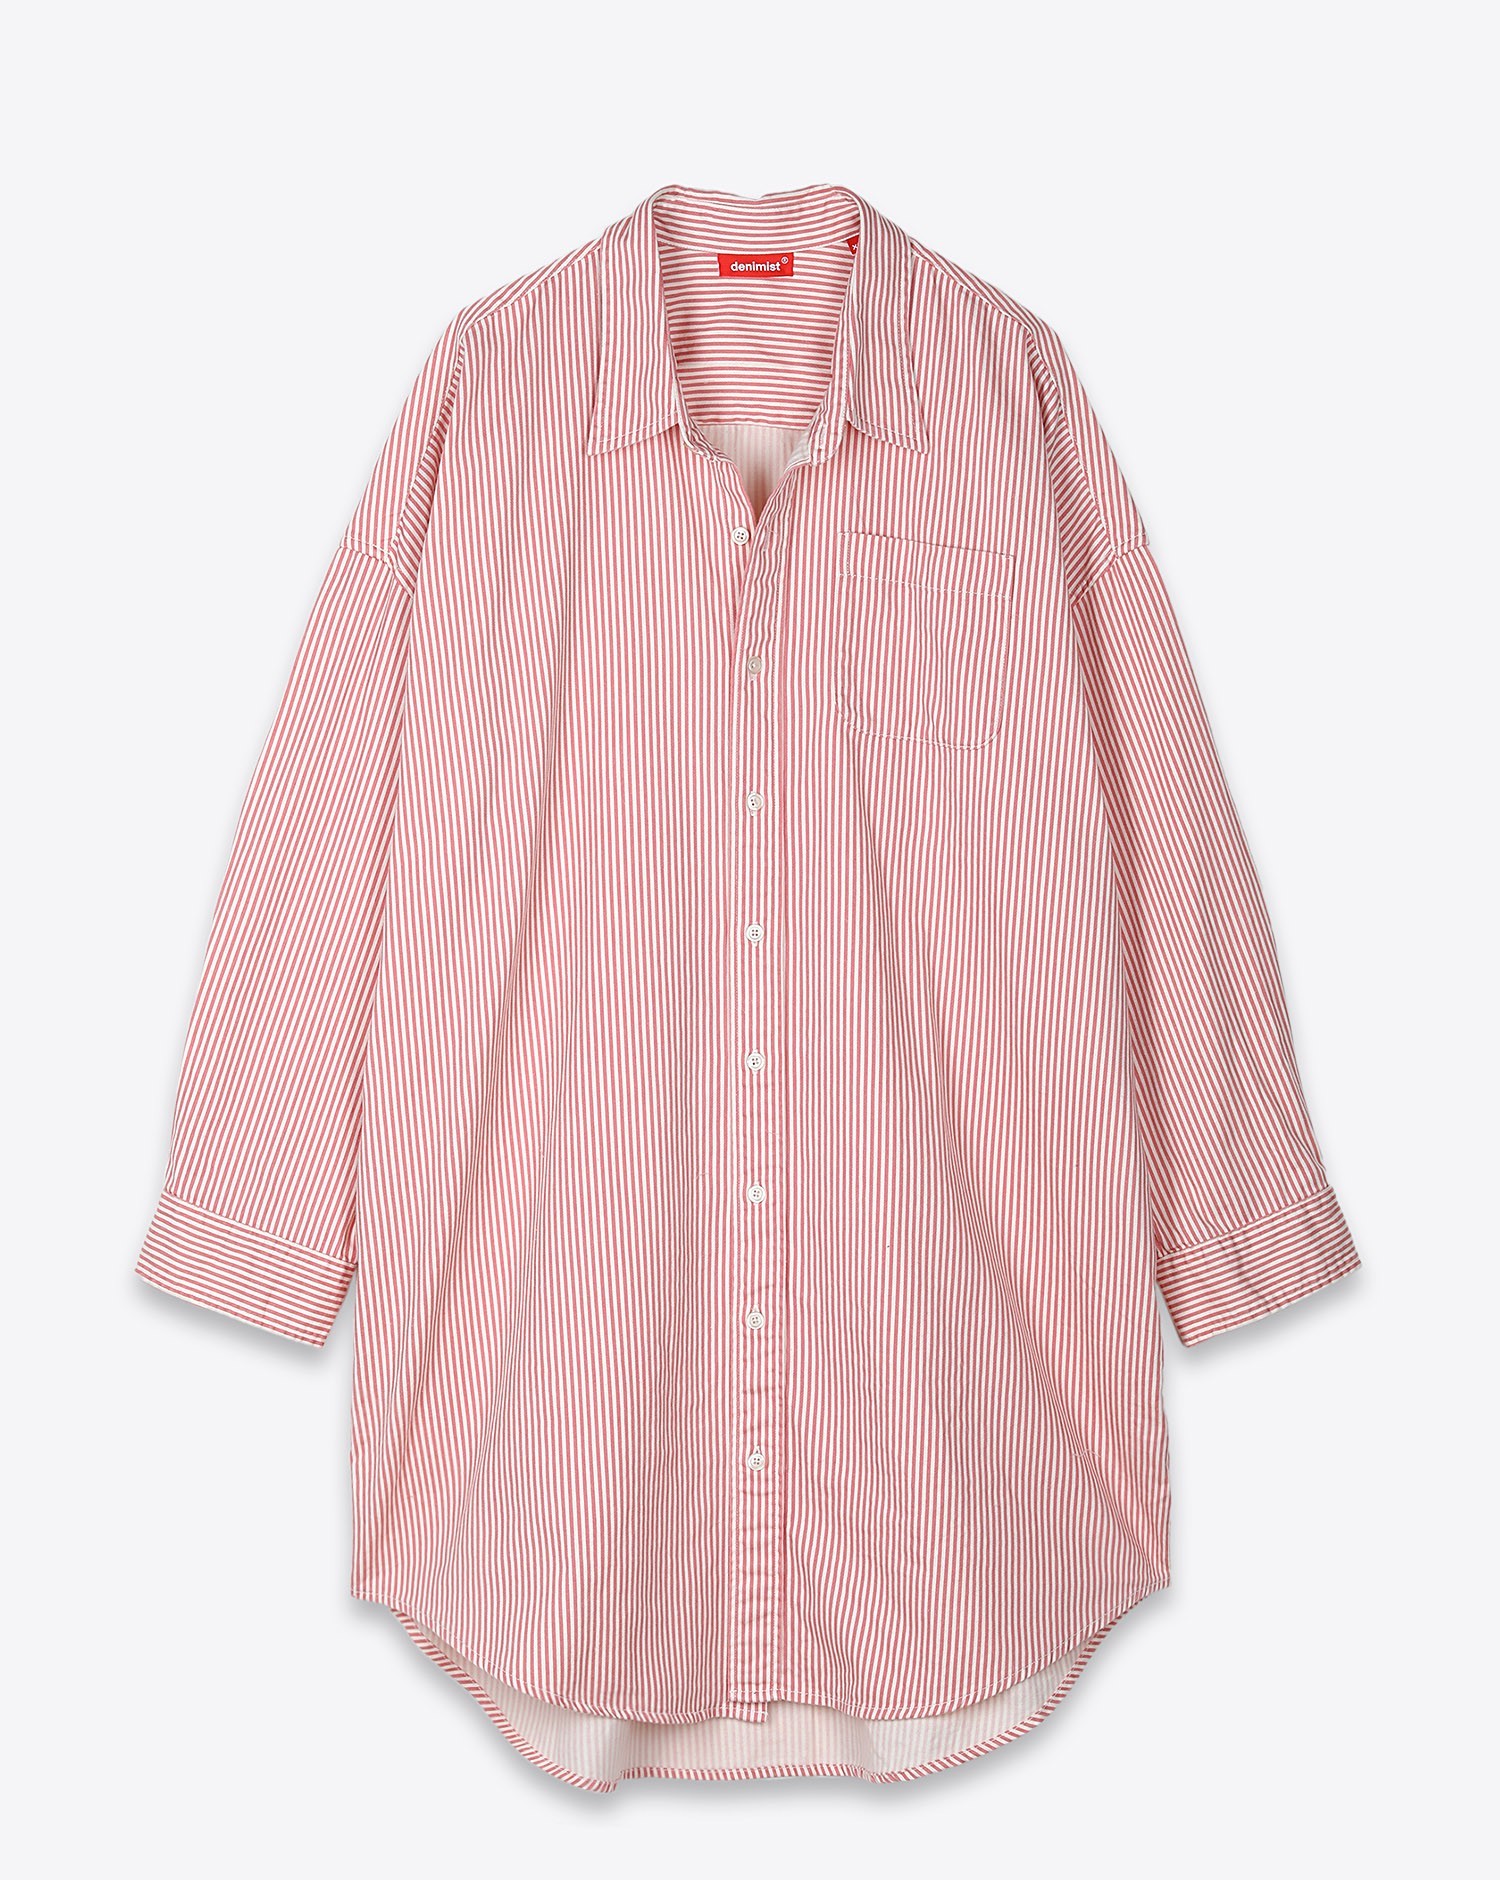 Image du produit Denimist Button Front Shirt Dress - Light Pink Stripe 